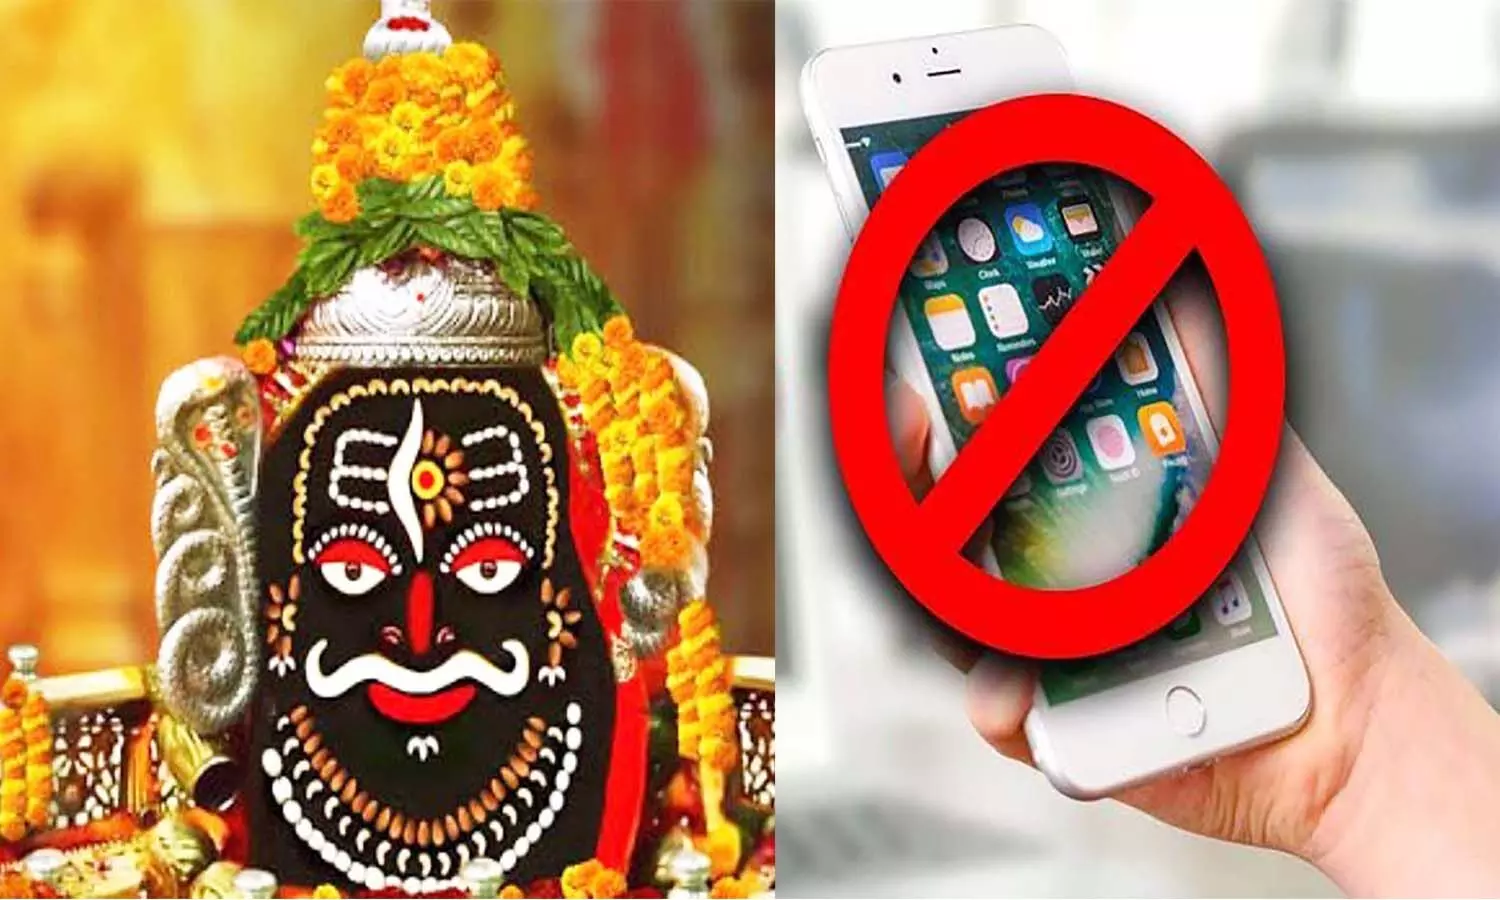 एमपी के उज्जैन महाकाल मंदिर परिसर में नहीं ले जा सकेंगे मोबाइल, लगेगा बैन